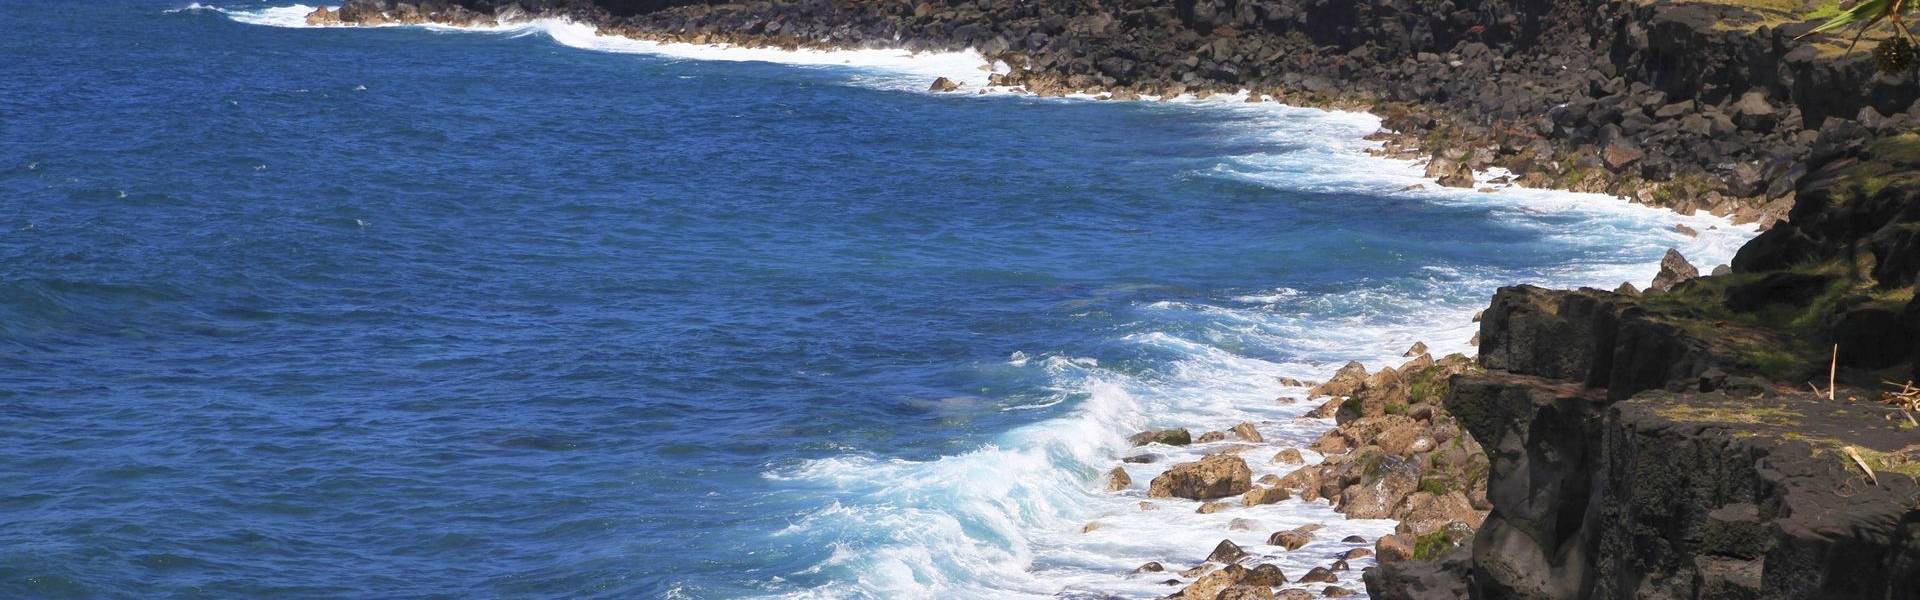 Découverte des côtes sauvages est et sud de la Réunion